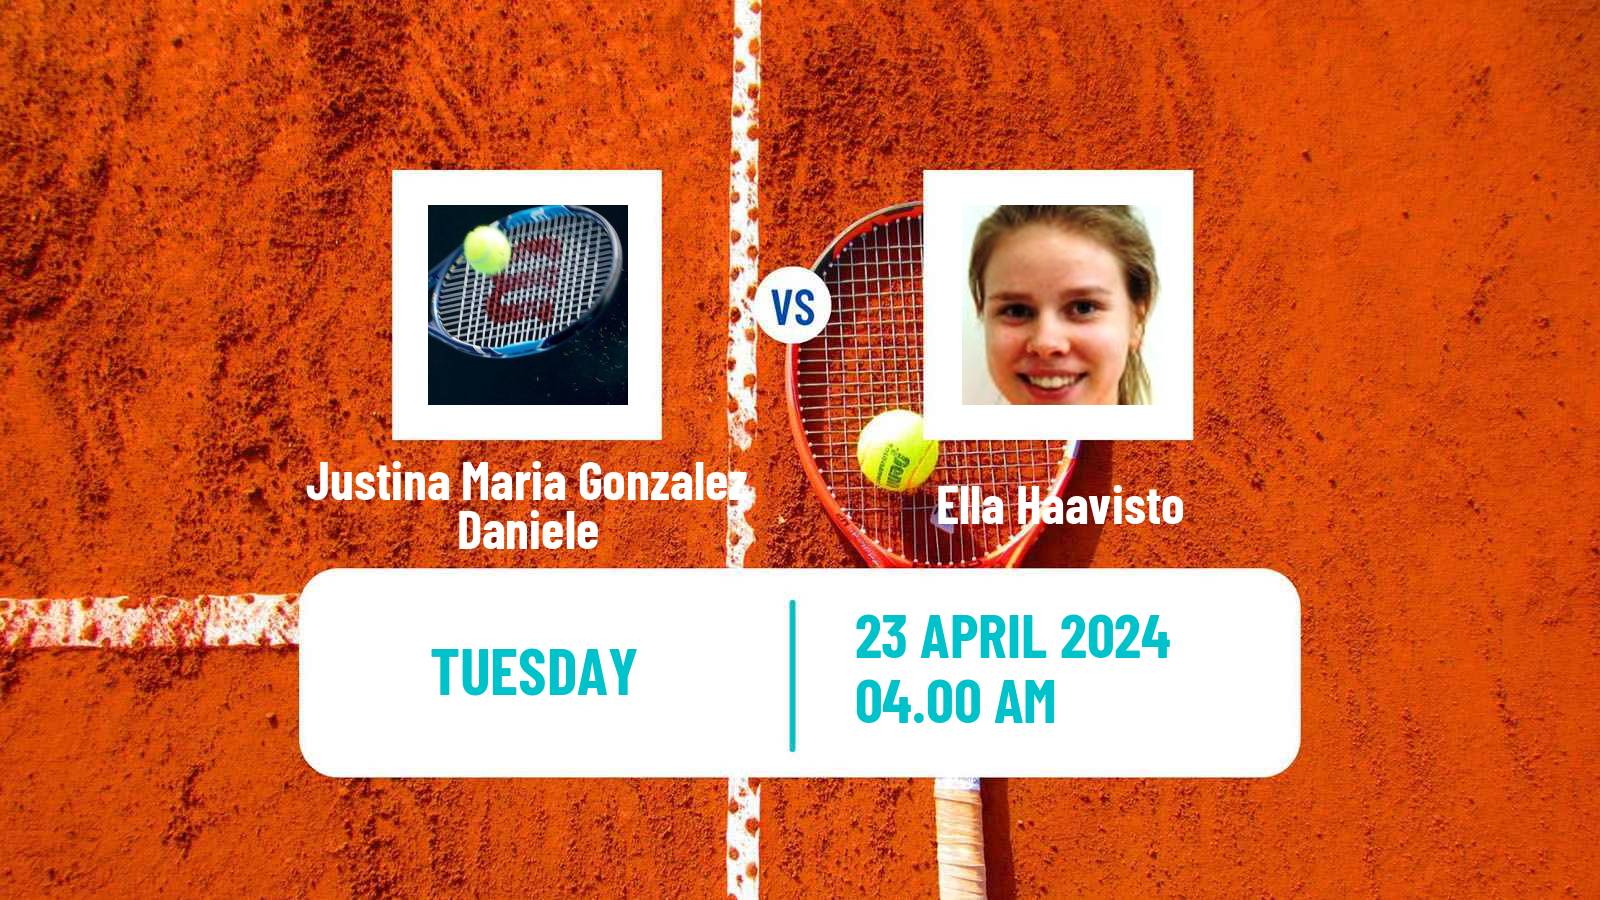 Tennis ITF W15 Antalya 11 Women 2024 Justina Maria Gonzalez Daniele - Ella Haavisto